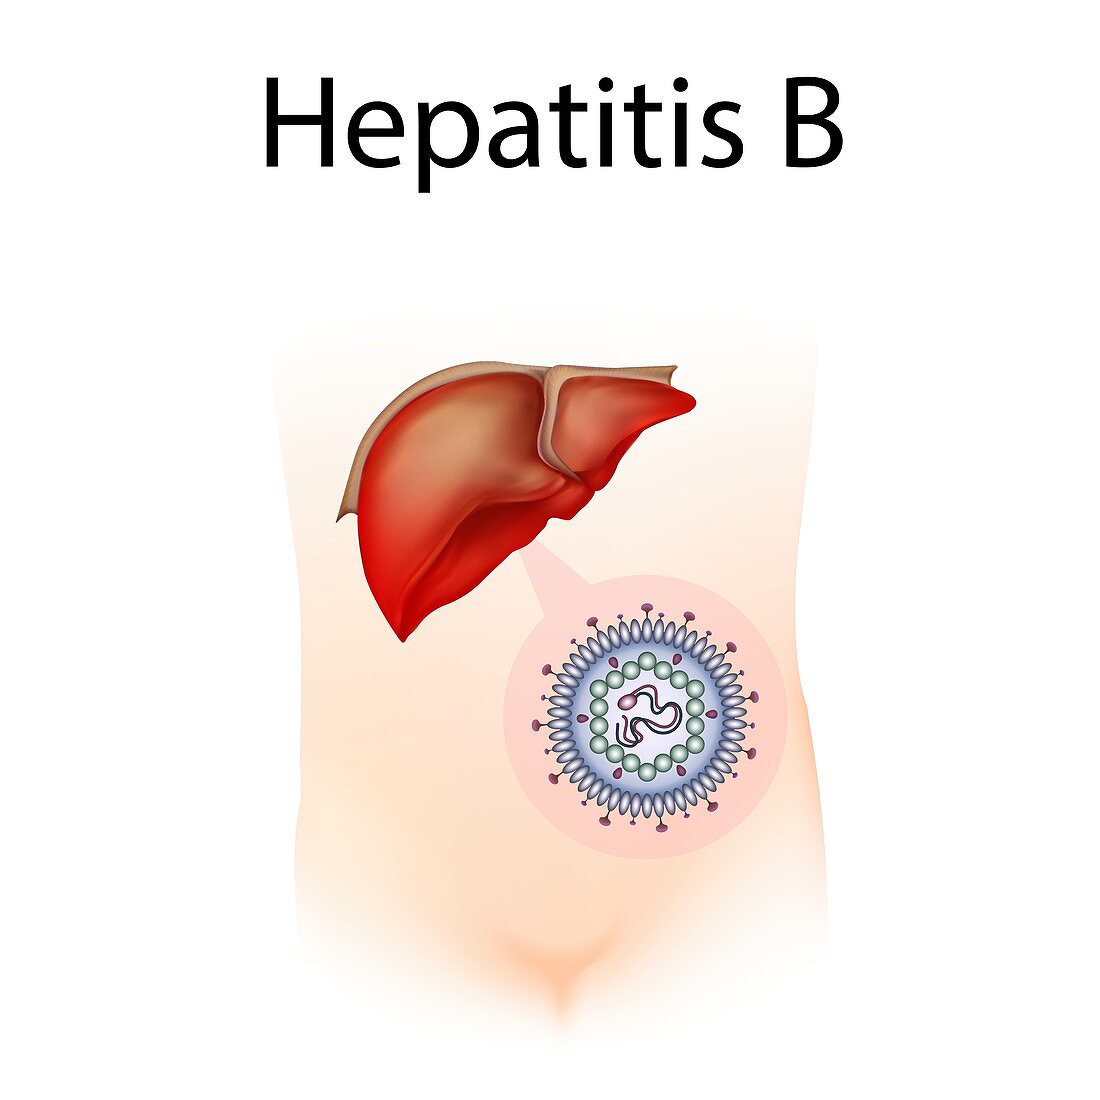 Hepatitis B,illustration